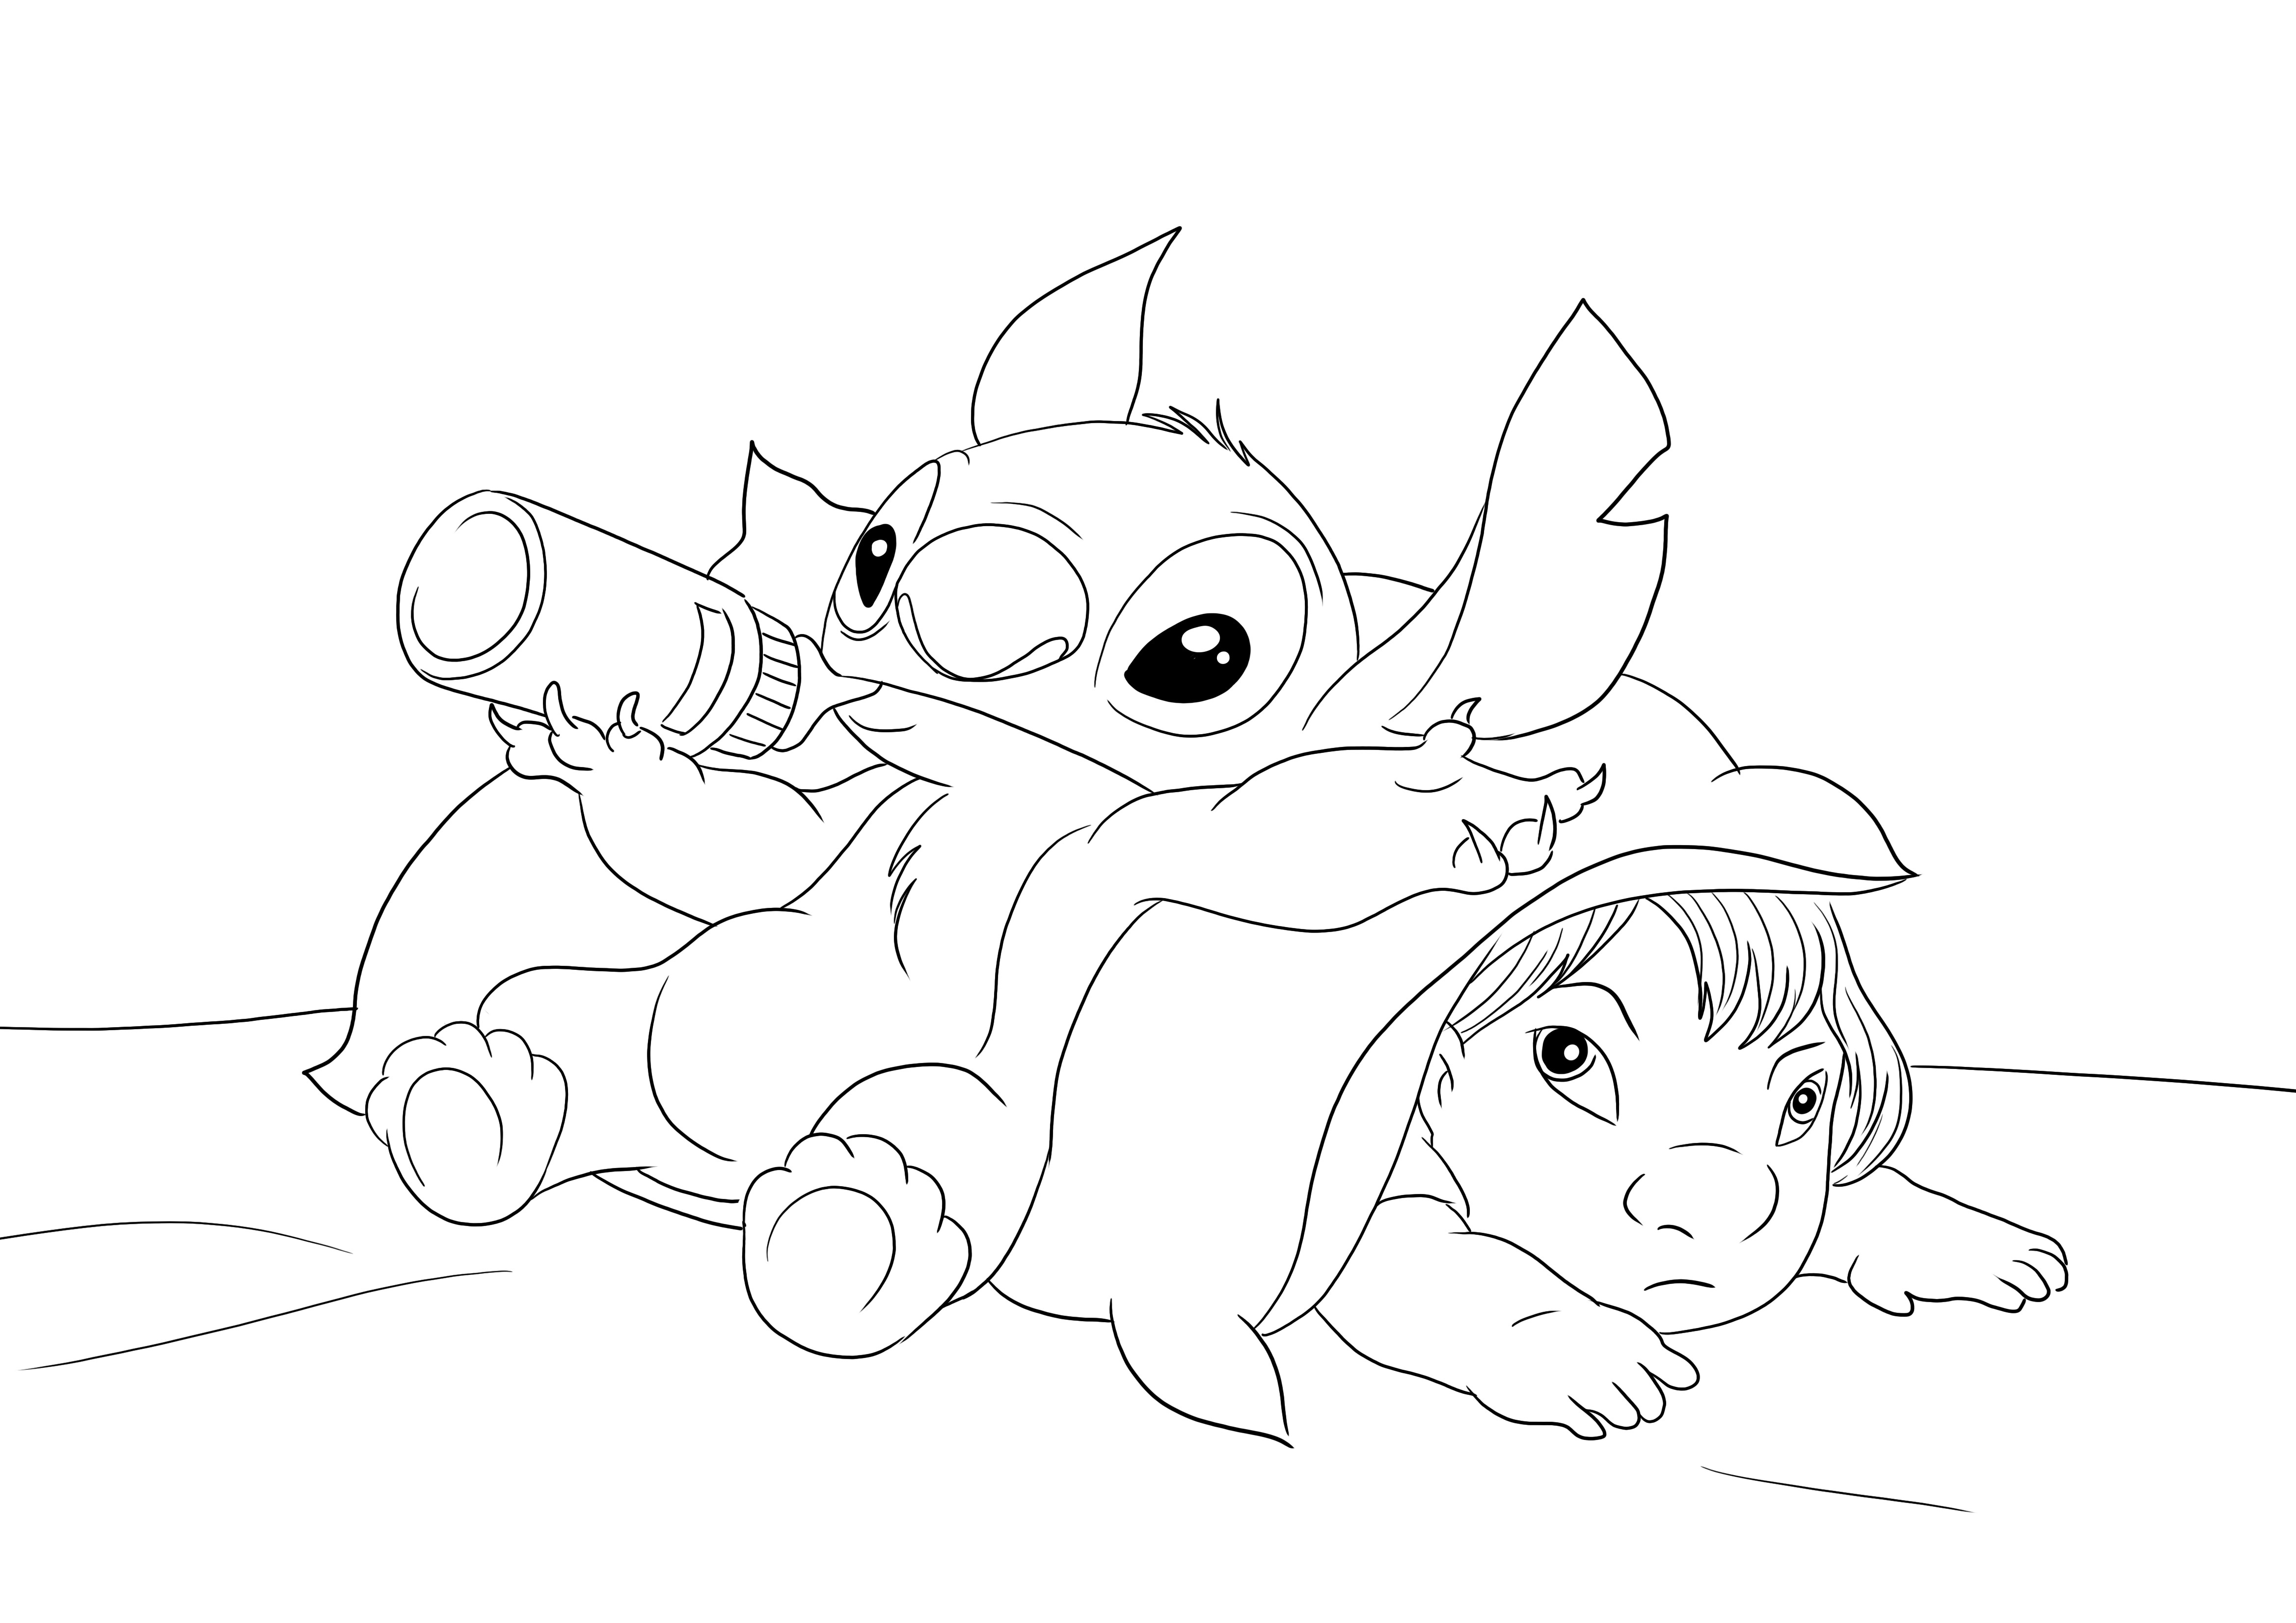 Baby Stitch ja Lilo ladattavissa ilmaiseksi ja väritettävä lapsille